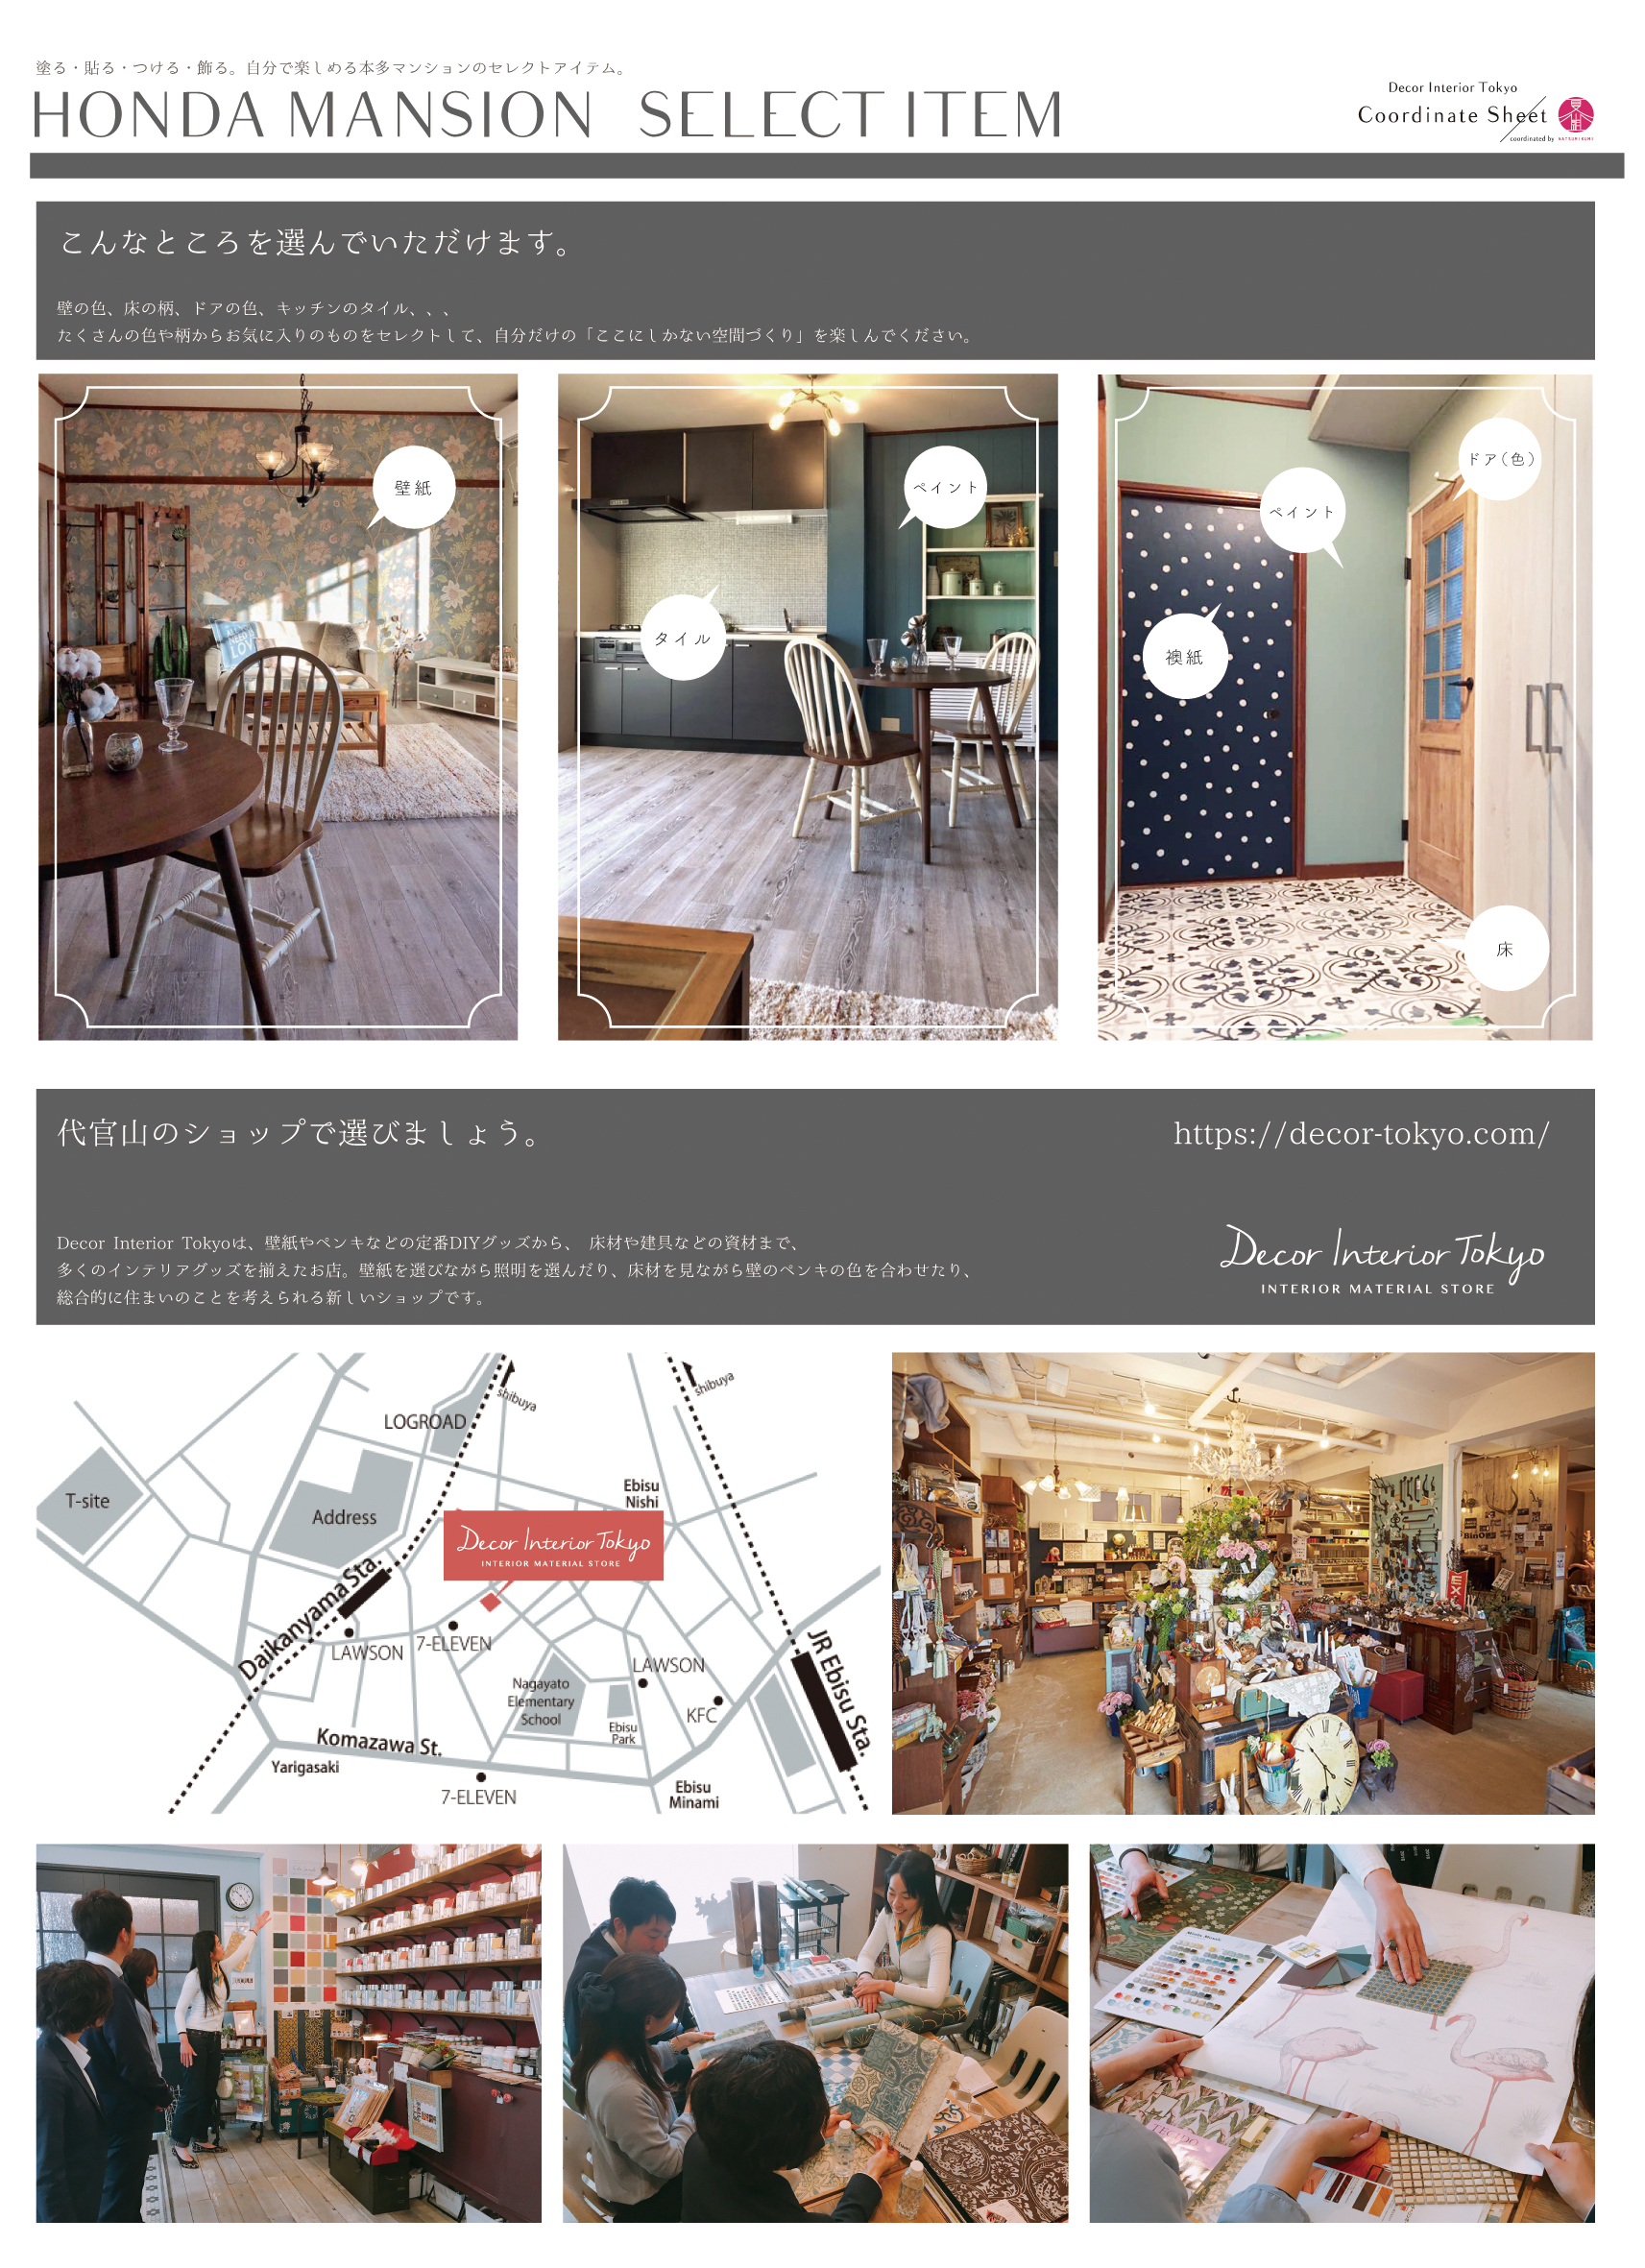 【Decor Interior Tokyo】当店がバックアップするDIYサポート付き賃貸住宅に住んでみませんか！？